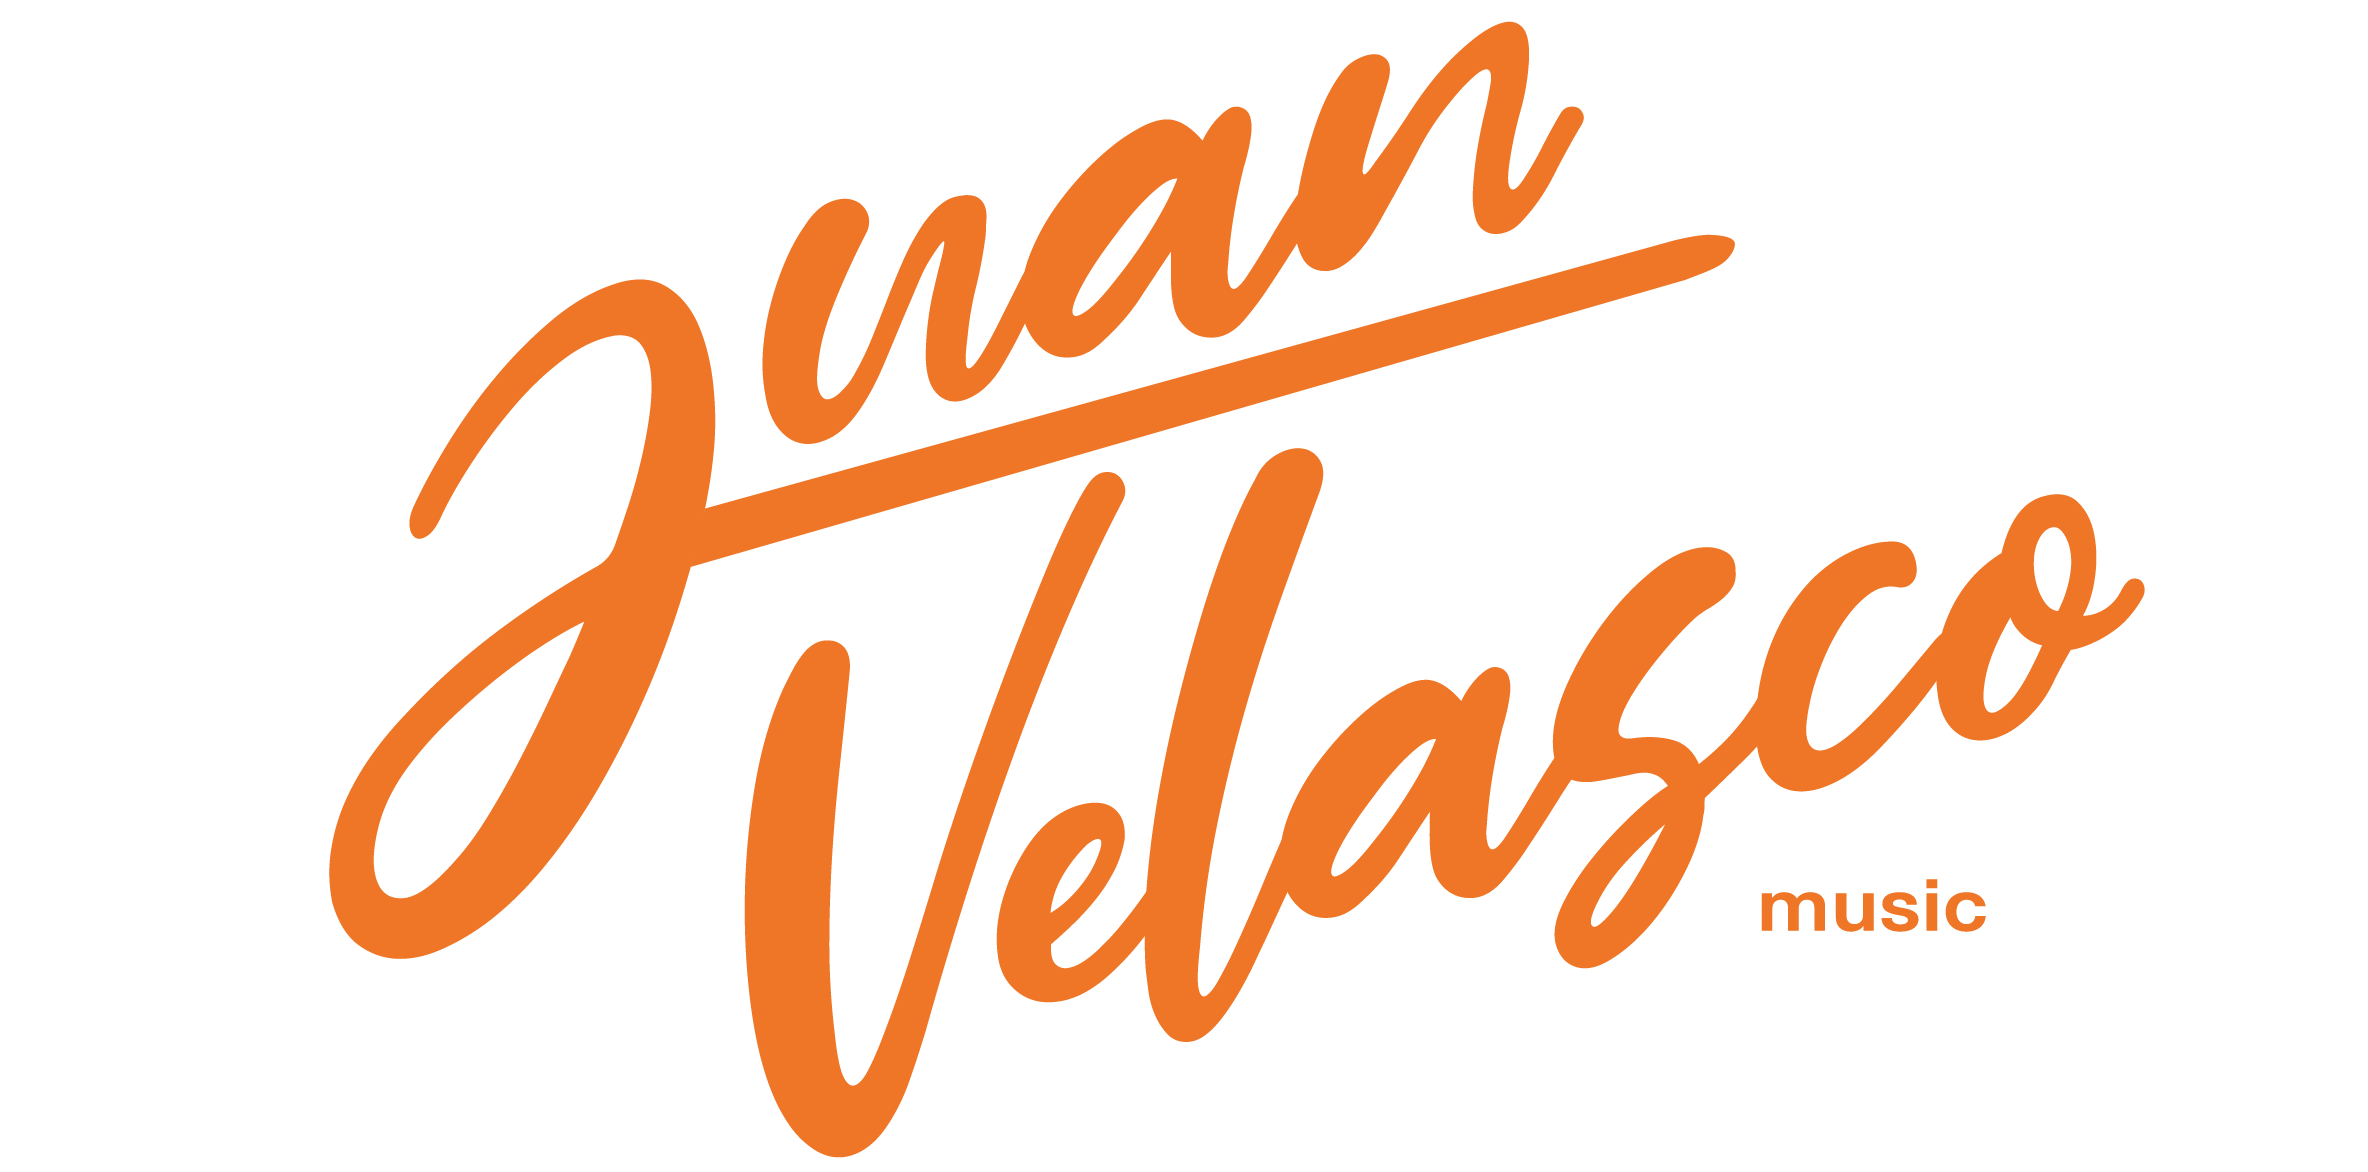 Juan Velasco Music